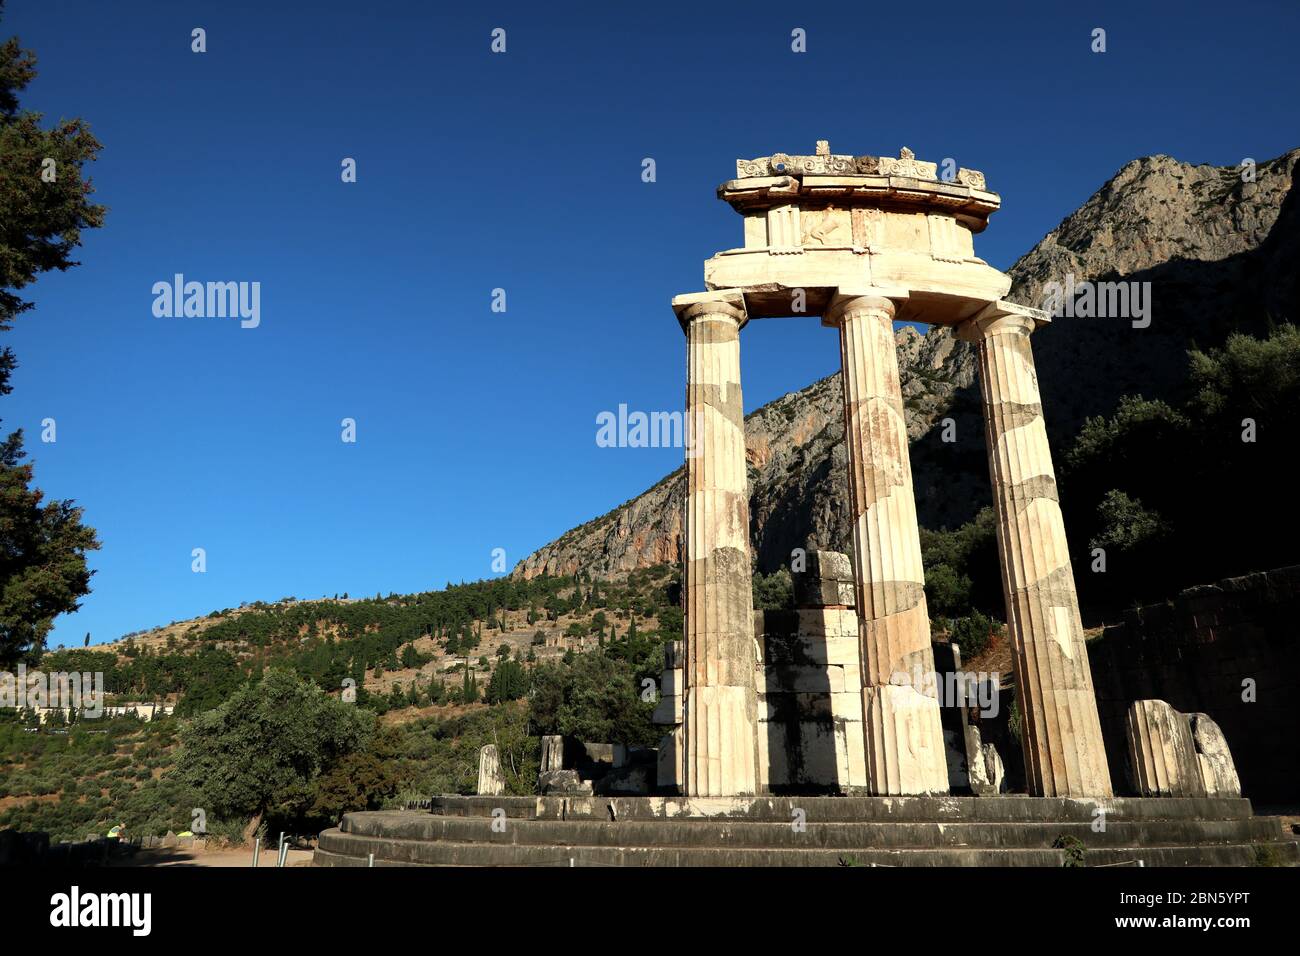 Temple of Athena Proaia, Delphi, Greece Stock Photo